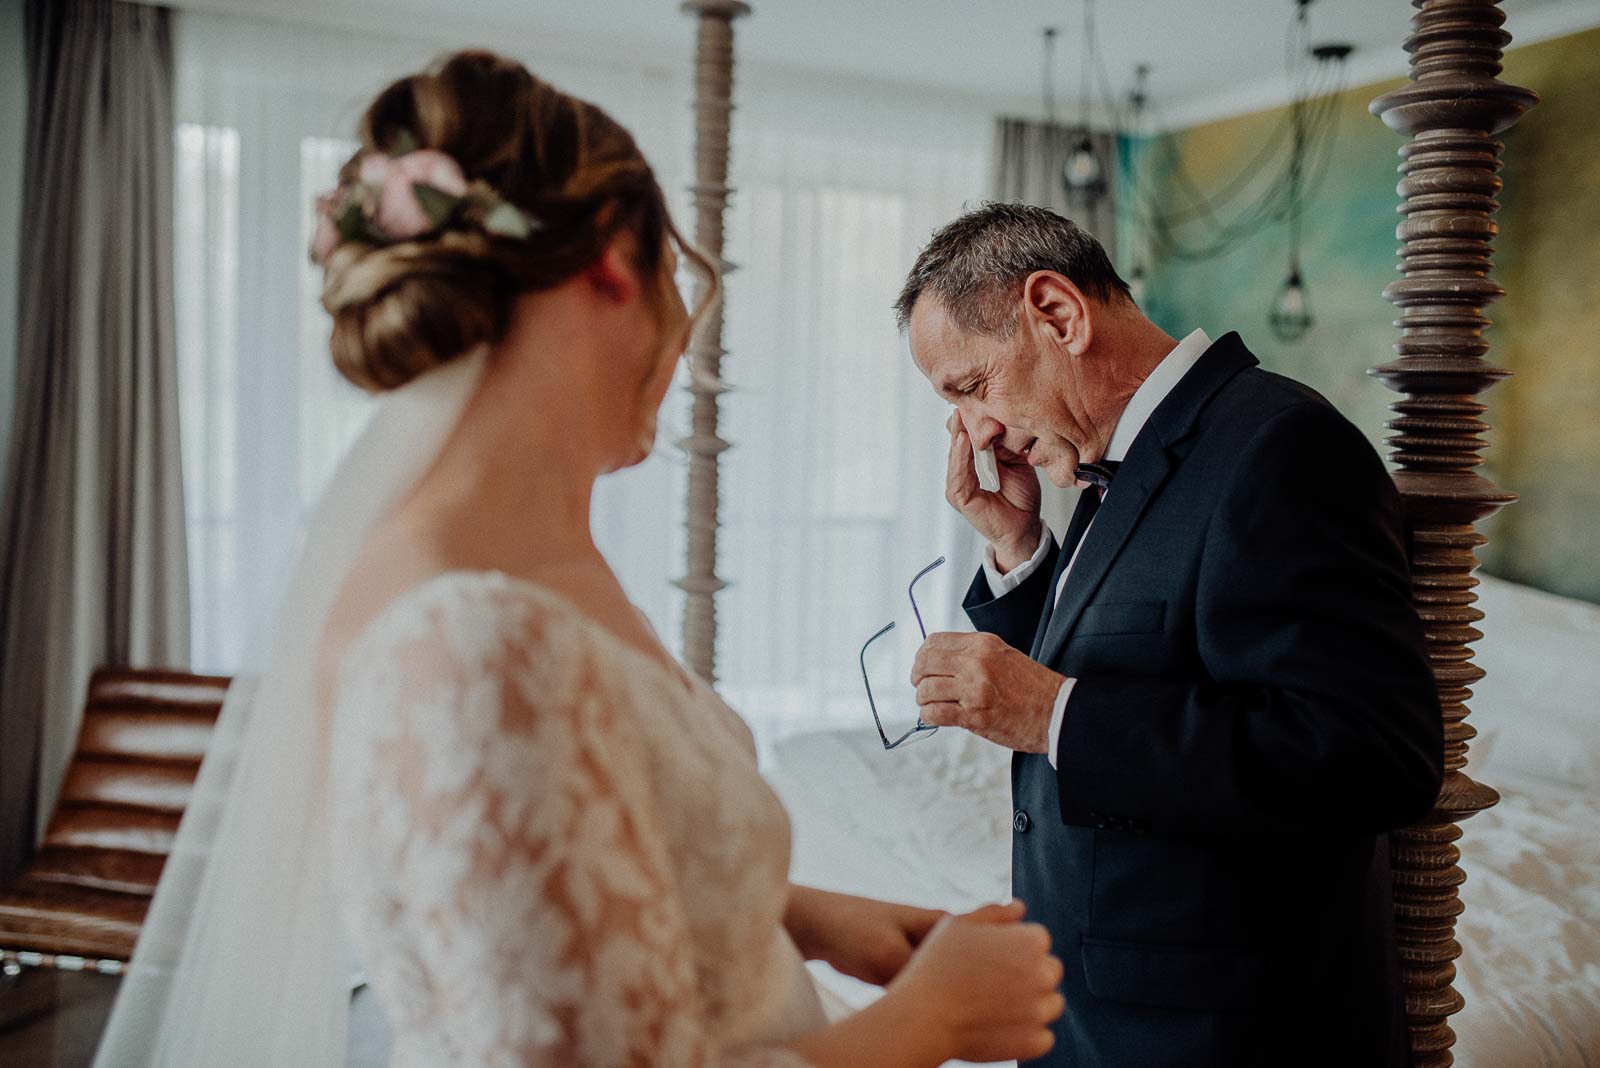 Der Brautvater sieht seine Tochter zum ersten Mal im Brautkleid und ist zu Tränen gerührt